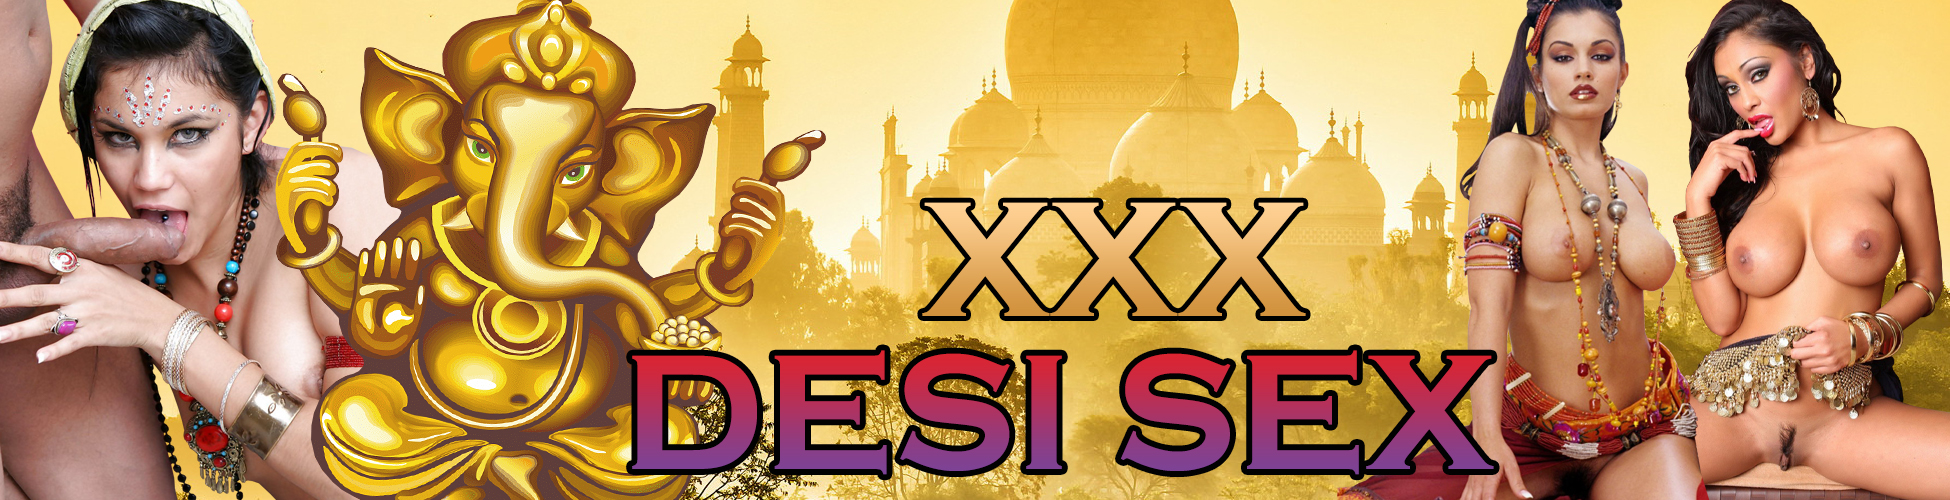 XXX Desi Sex â¤ï¸ï¸ Hot HD Hindi Porn